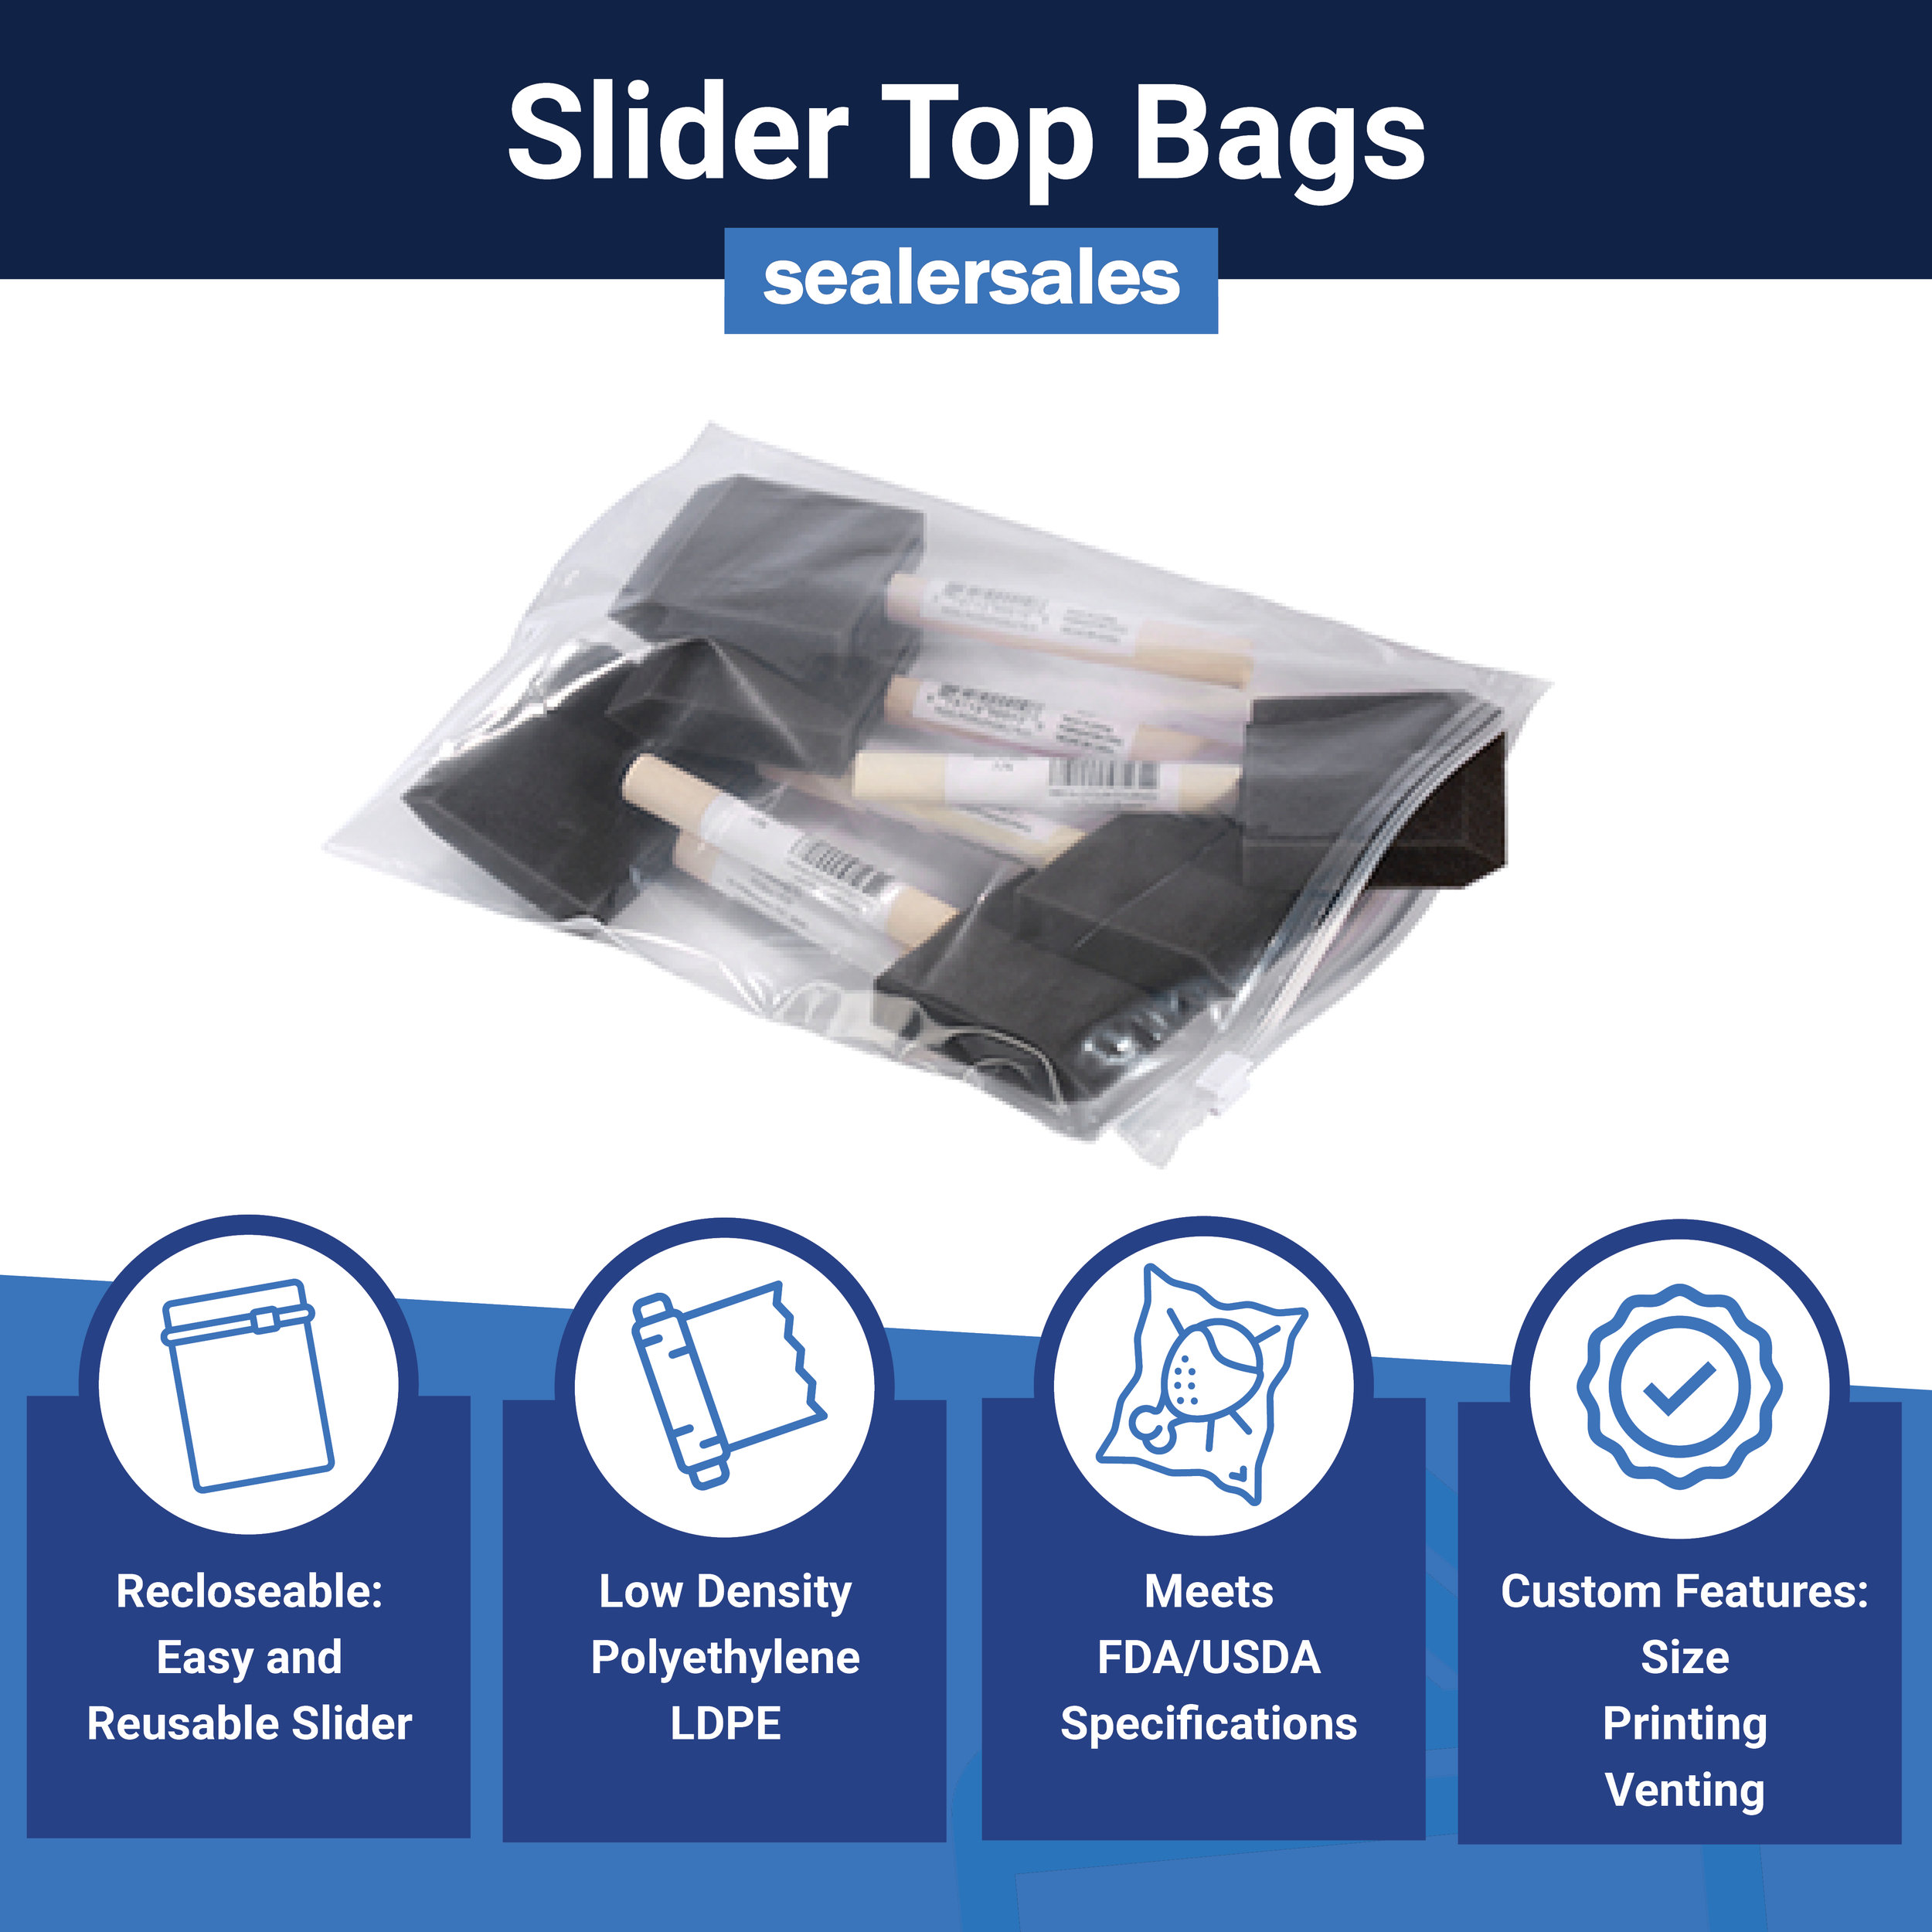 Slider Top Bags_sealersales.png